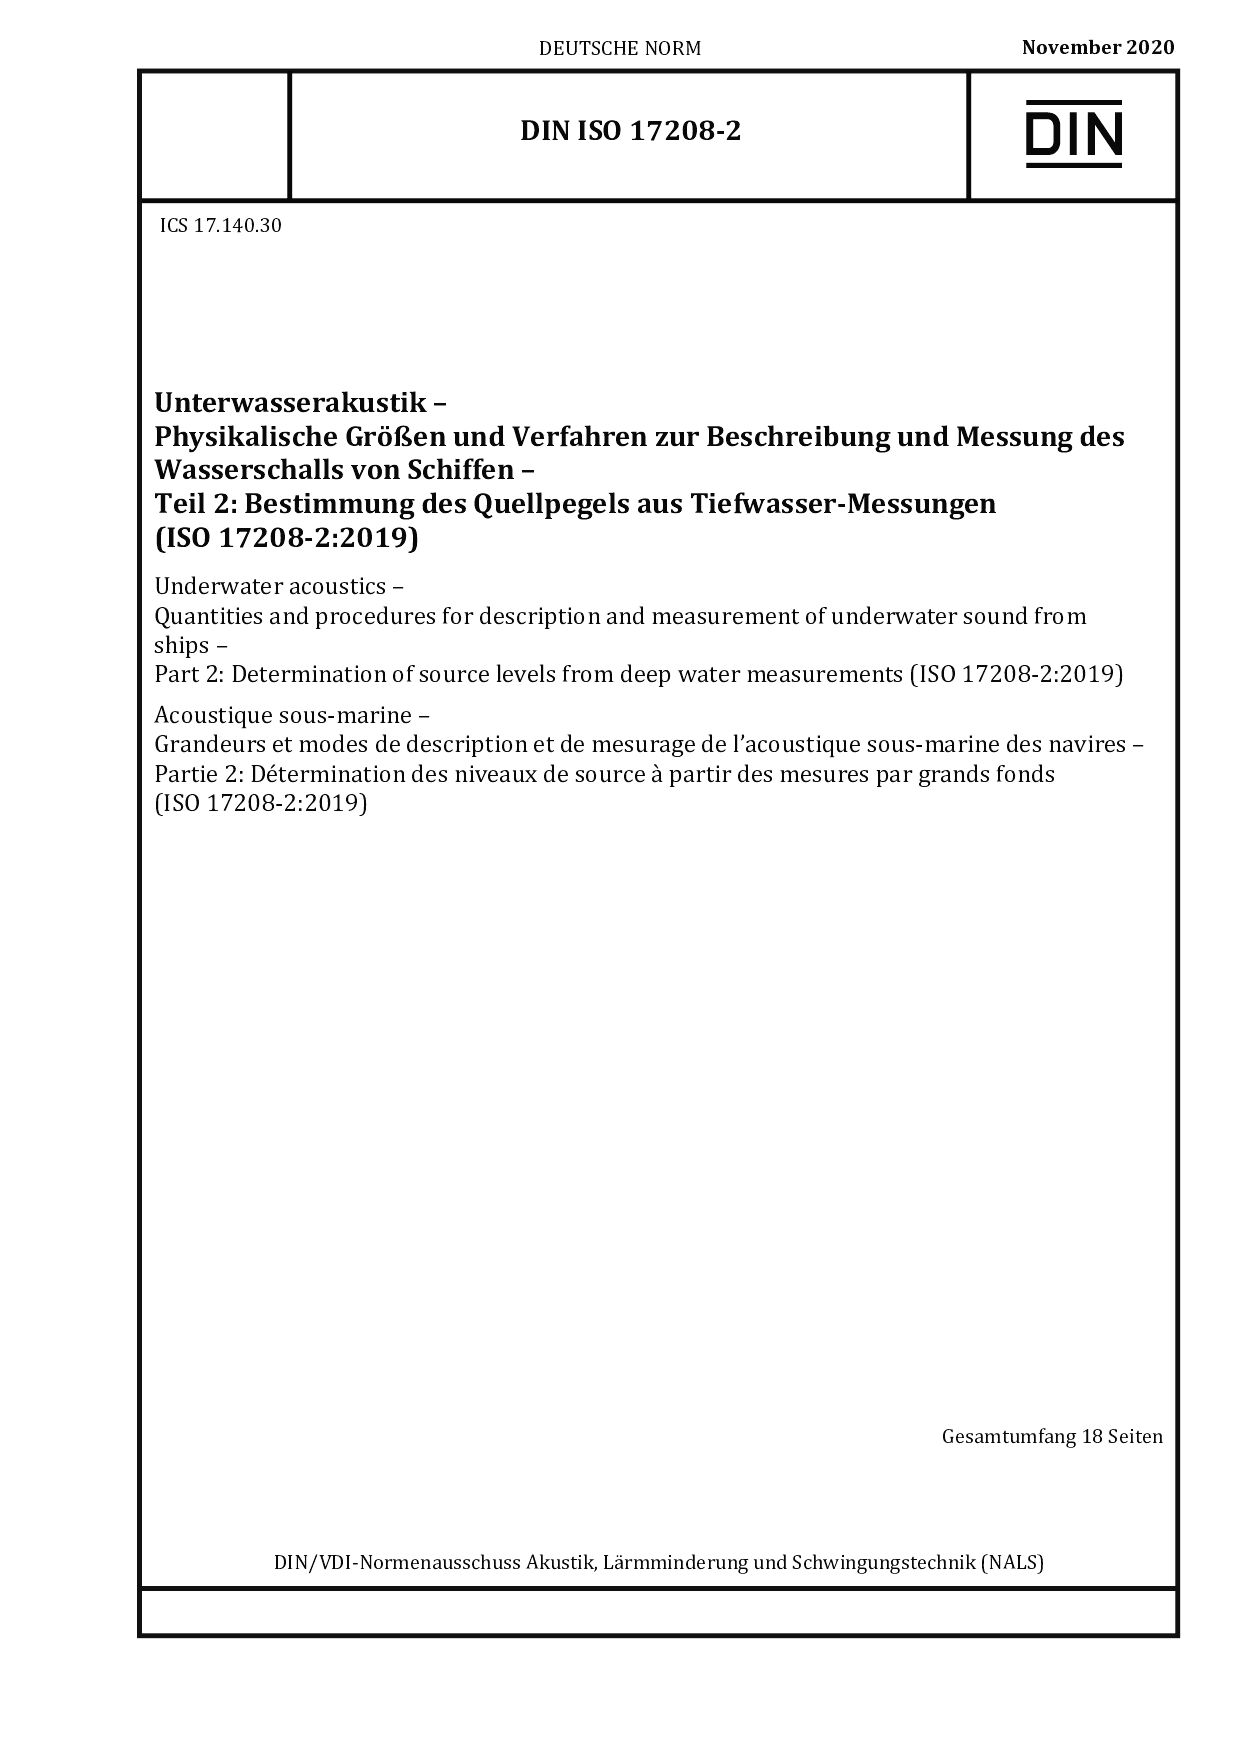 DIN ISO 17208-2:2020封面图